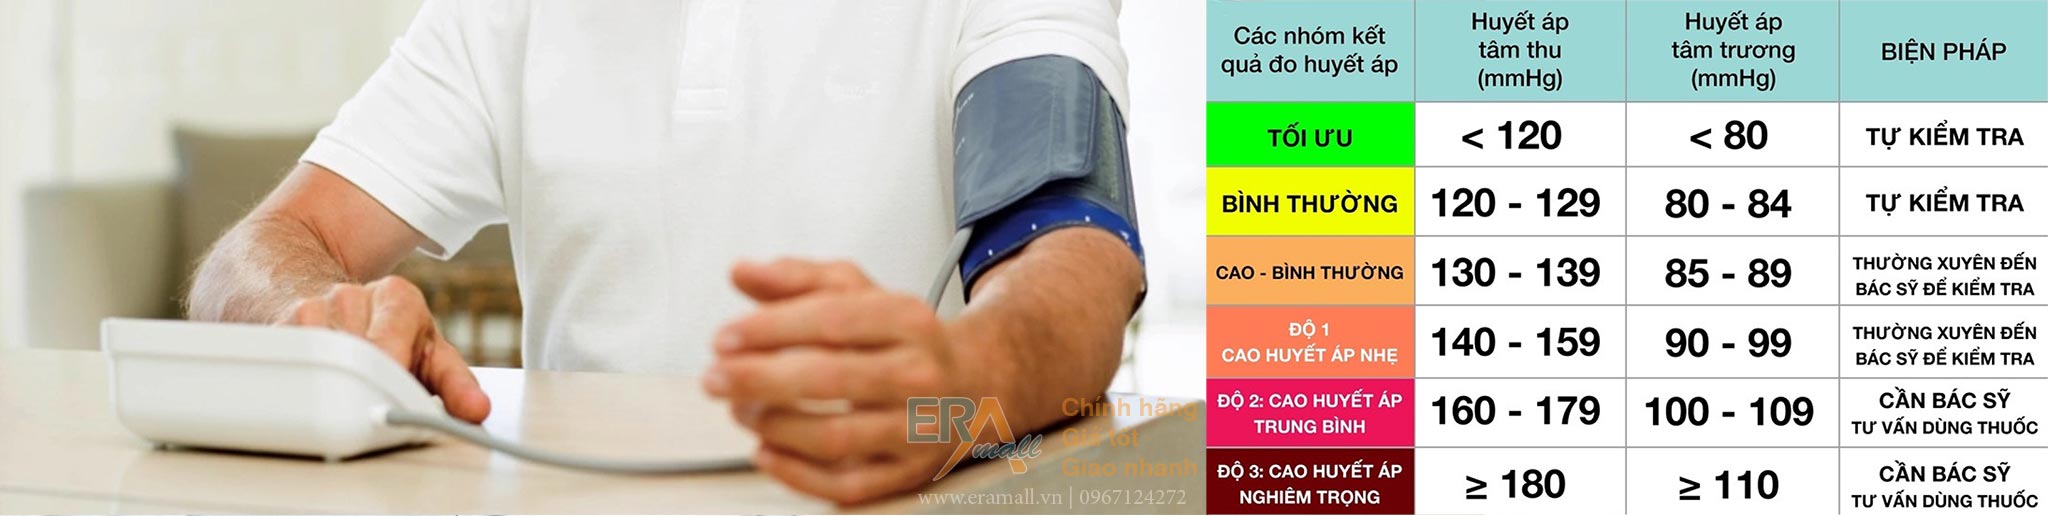 Bảng chỉ số huyết áp tâm thu, huyết áp tâm trương và biện pháp phòng ngừa